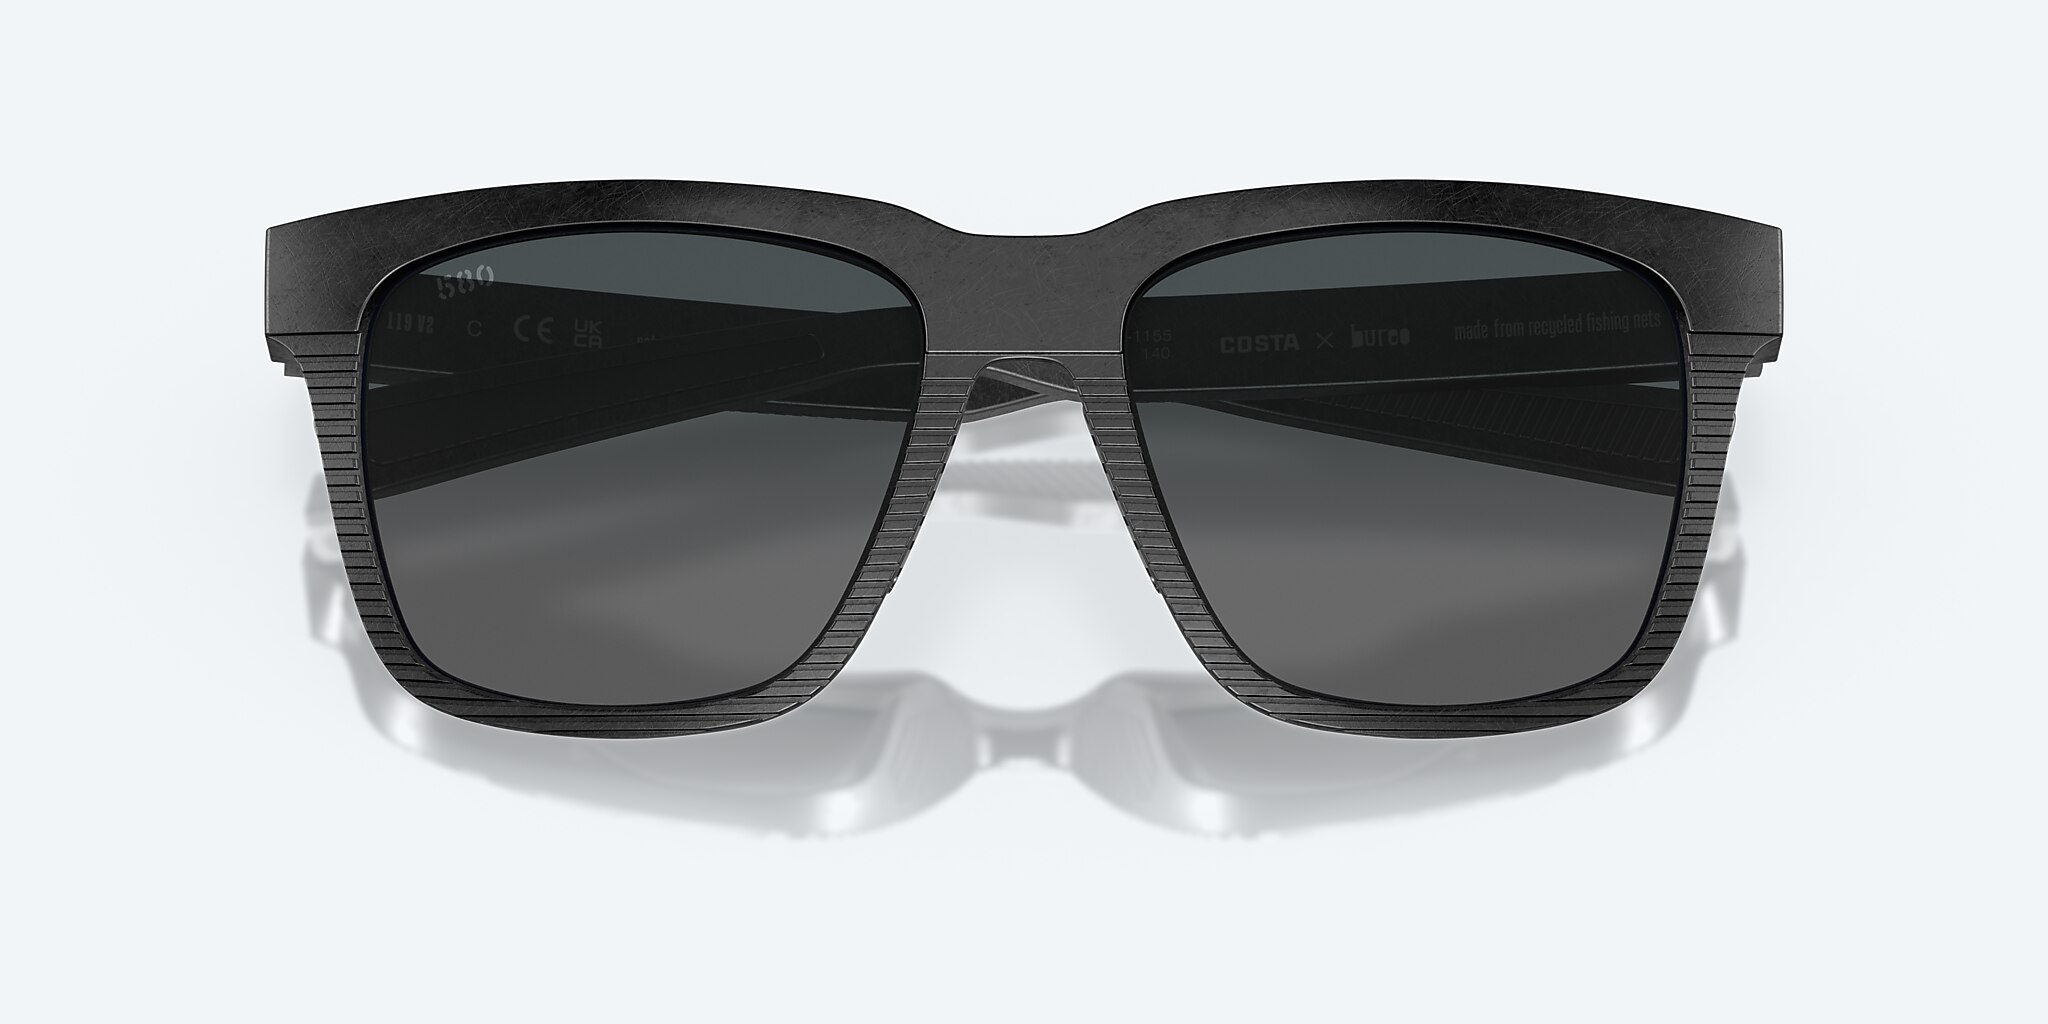 Costa Del Mar Men Pescador Polarized Sunglasses Light Grey/Blue Mirror 580G  55mm - Speert International